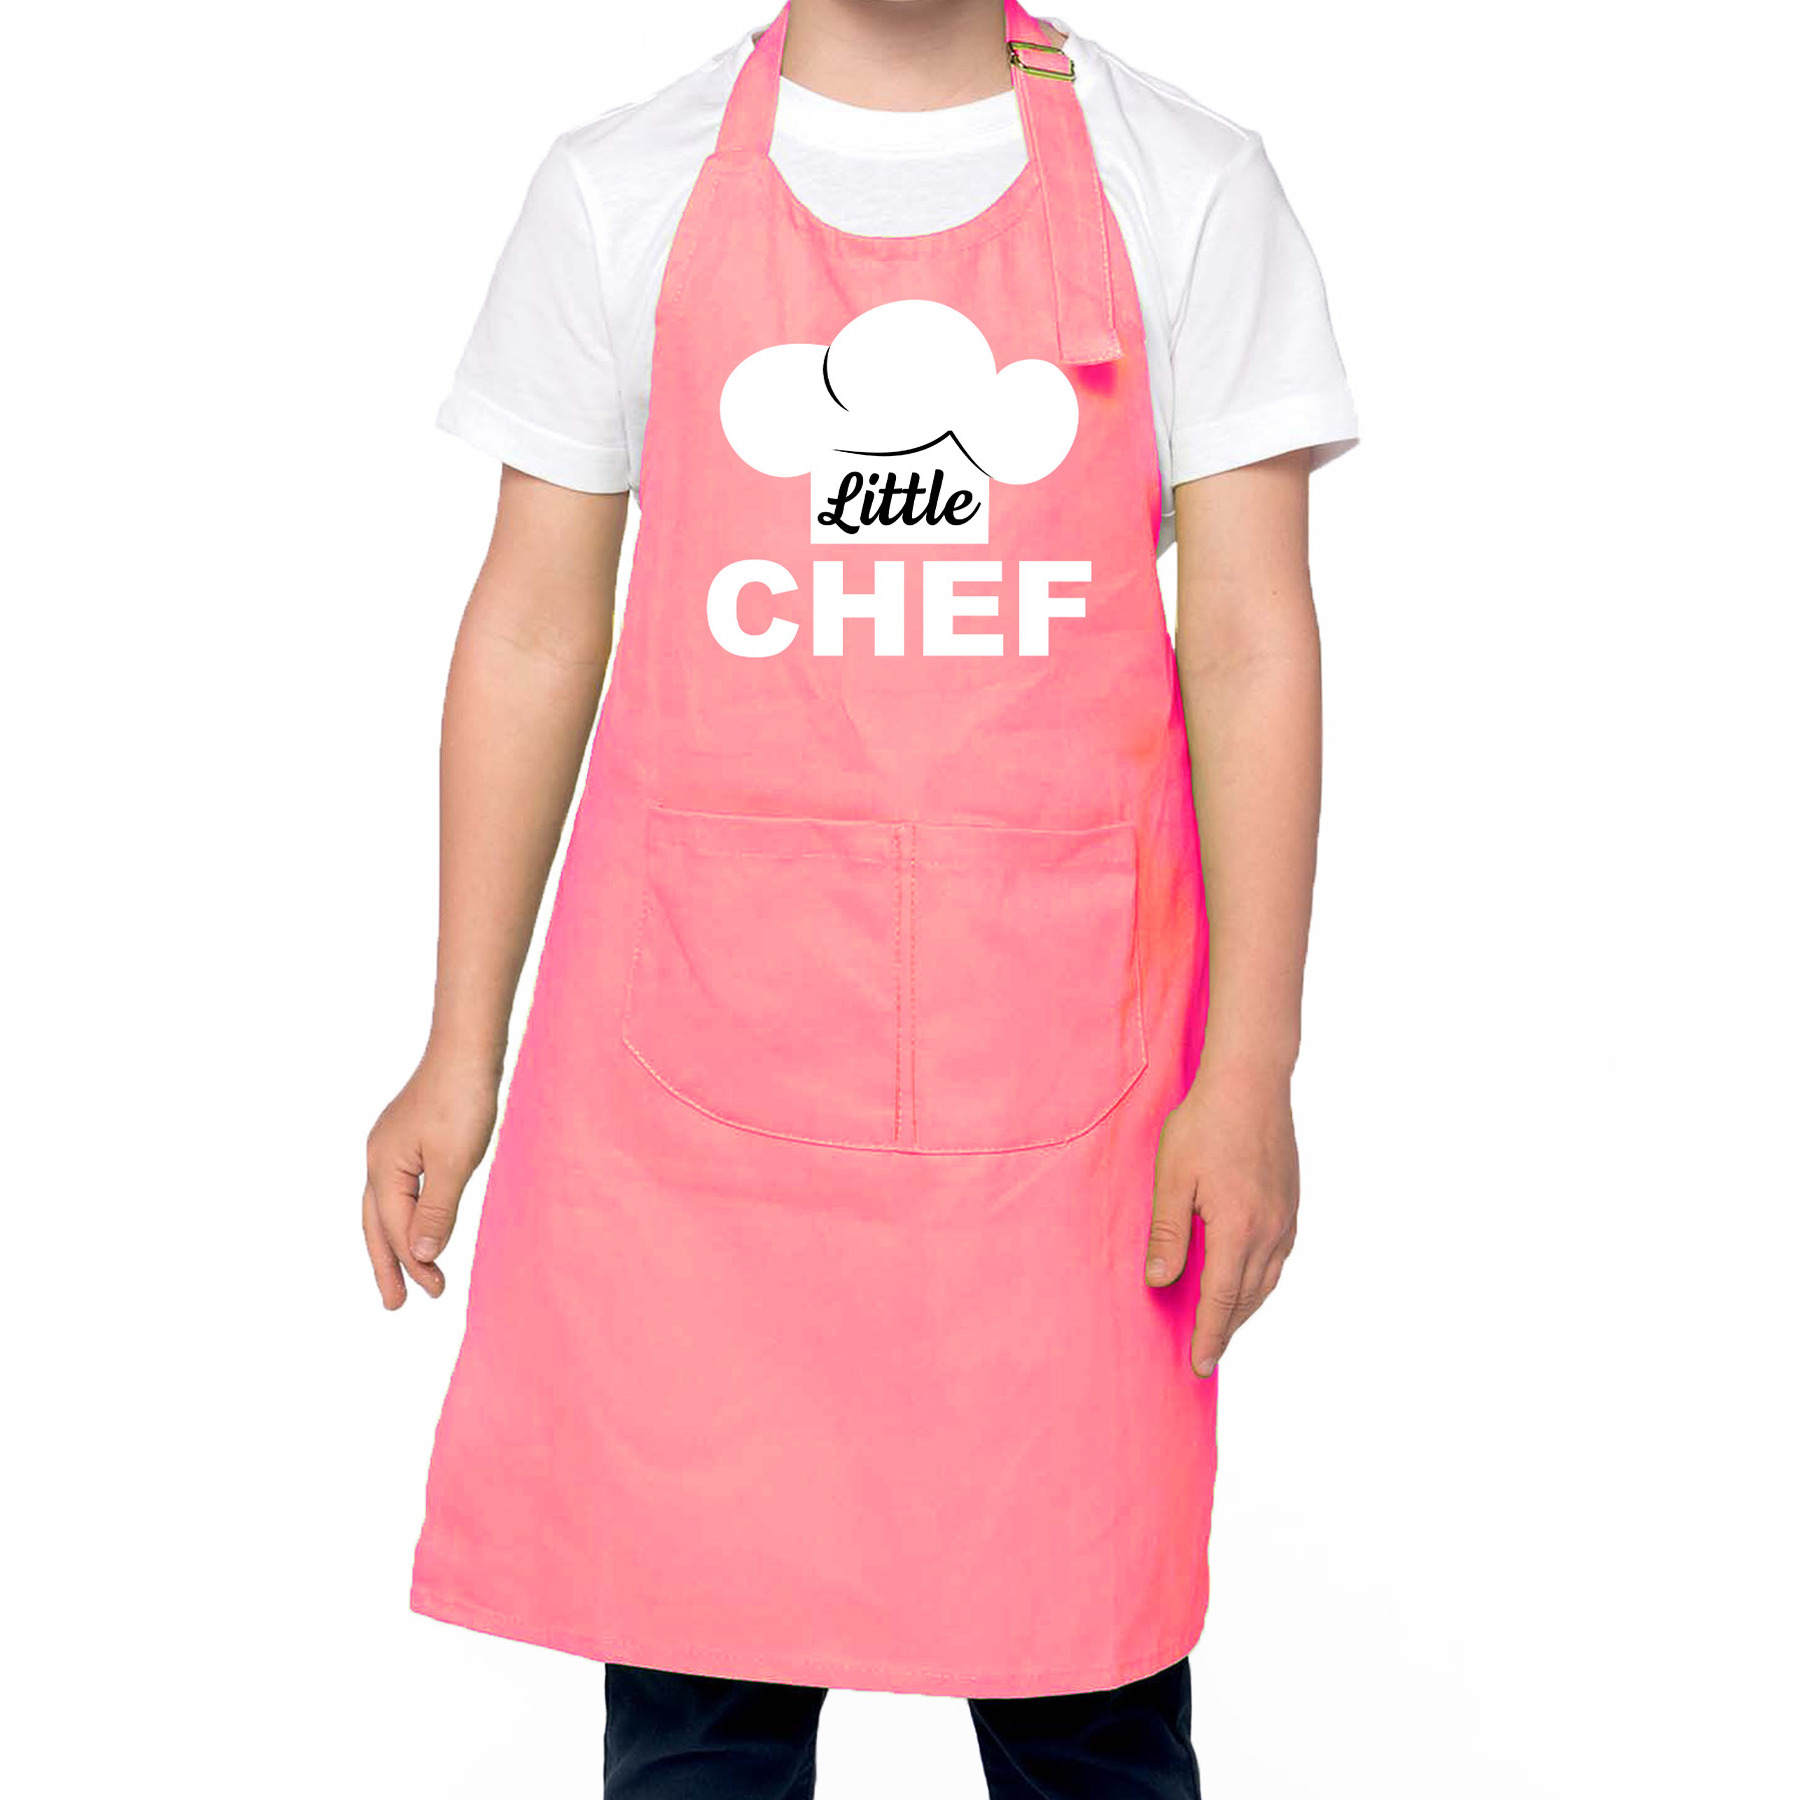 Little chef Keukenschort kinderen/ kinder schort roze voor jongens en meisjes